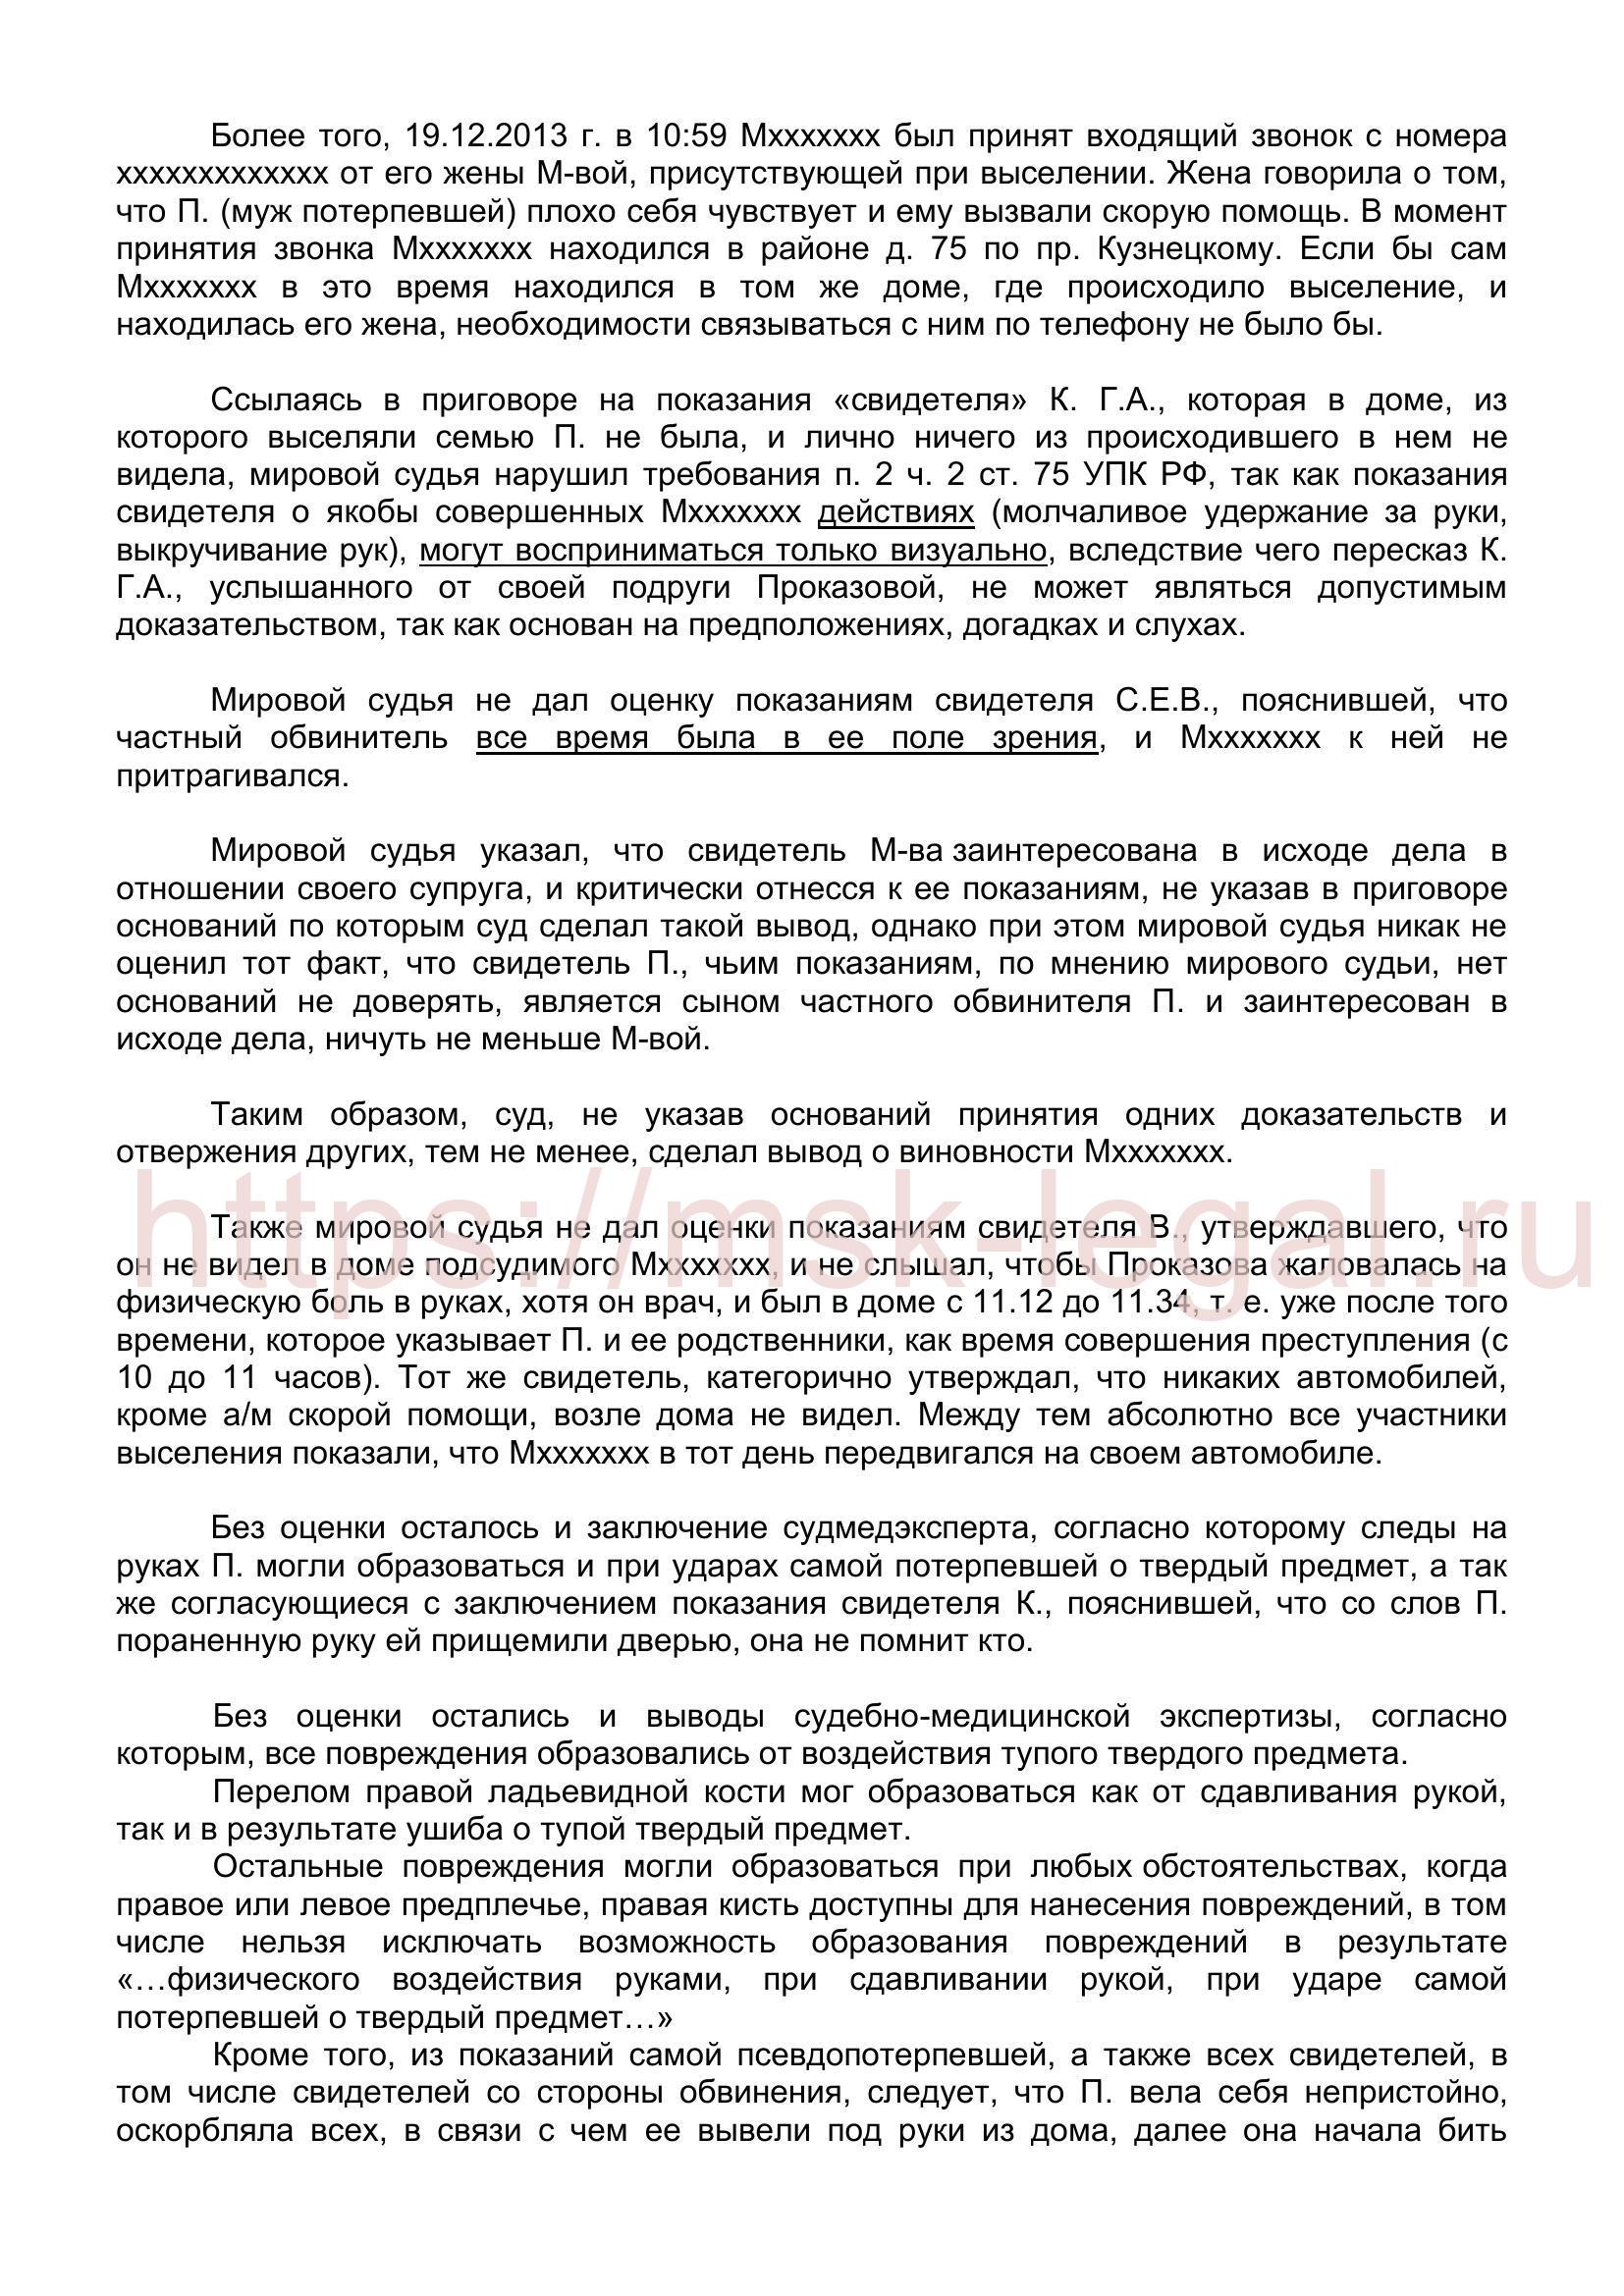 Жалоба на приговор мирового судьи по ст. 116 УК РФ